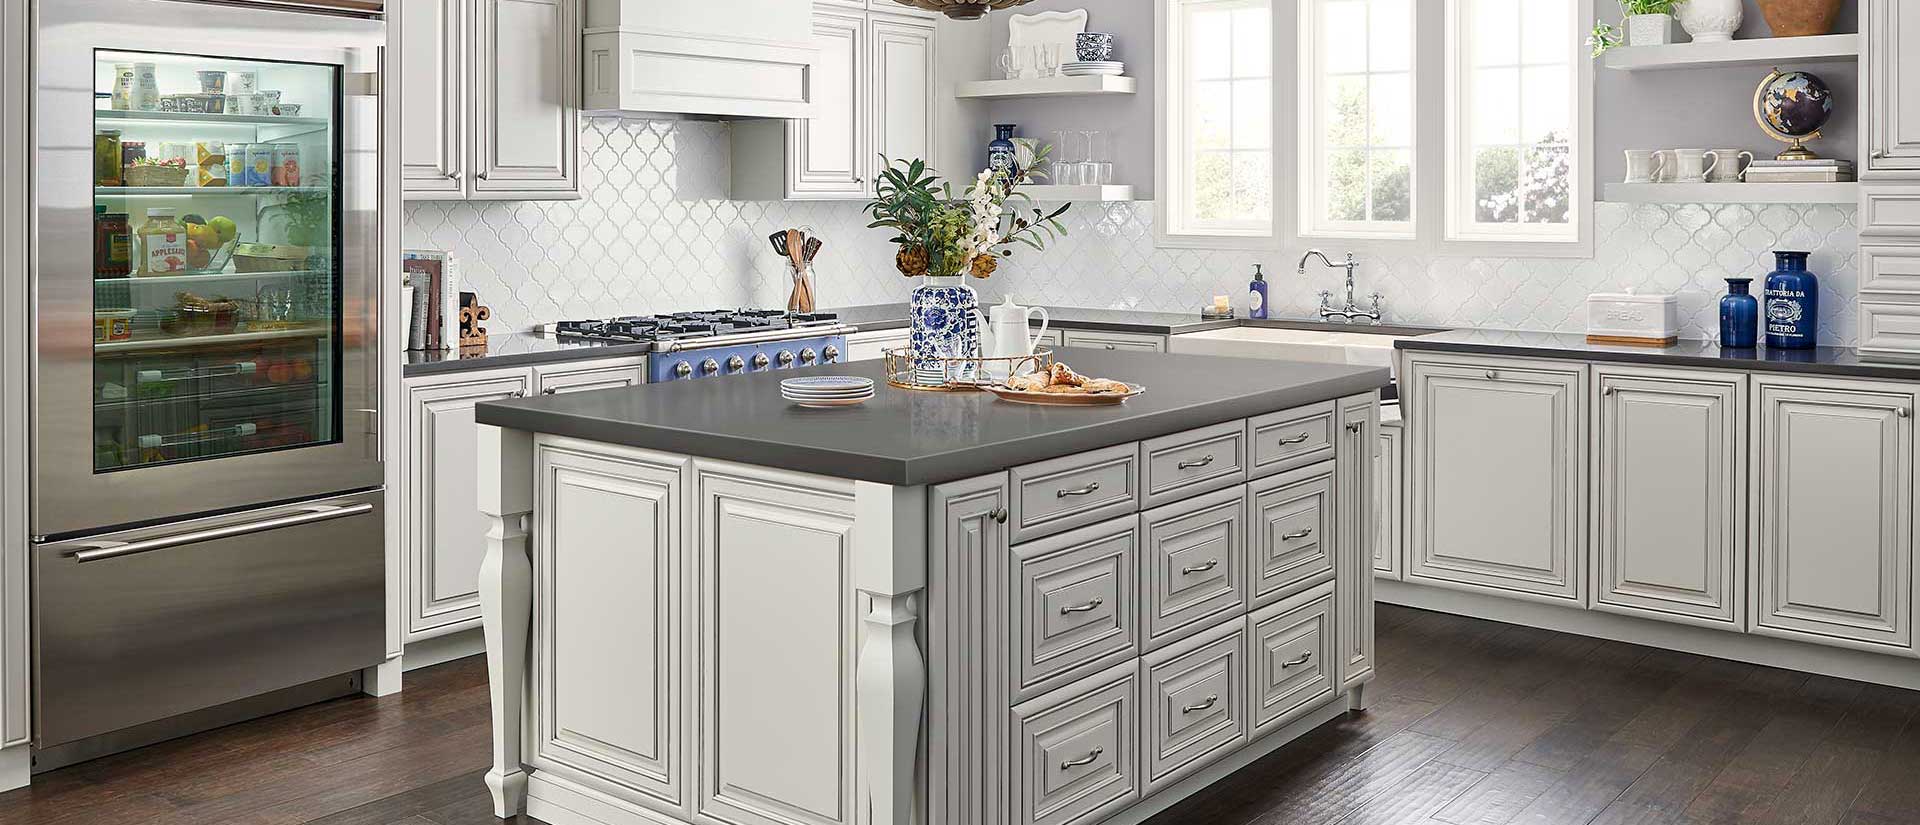 Weiße Küche mit grauer Arbeitsplatte - eine faszinierende Designidee